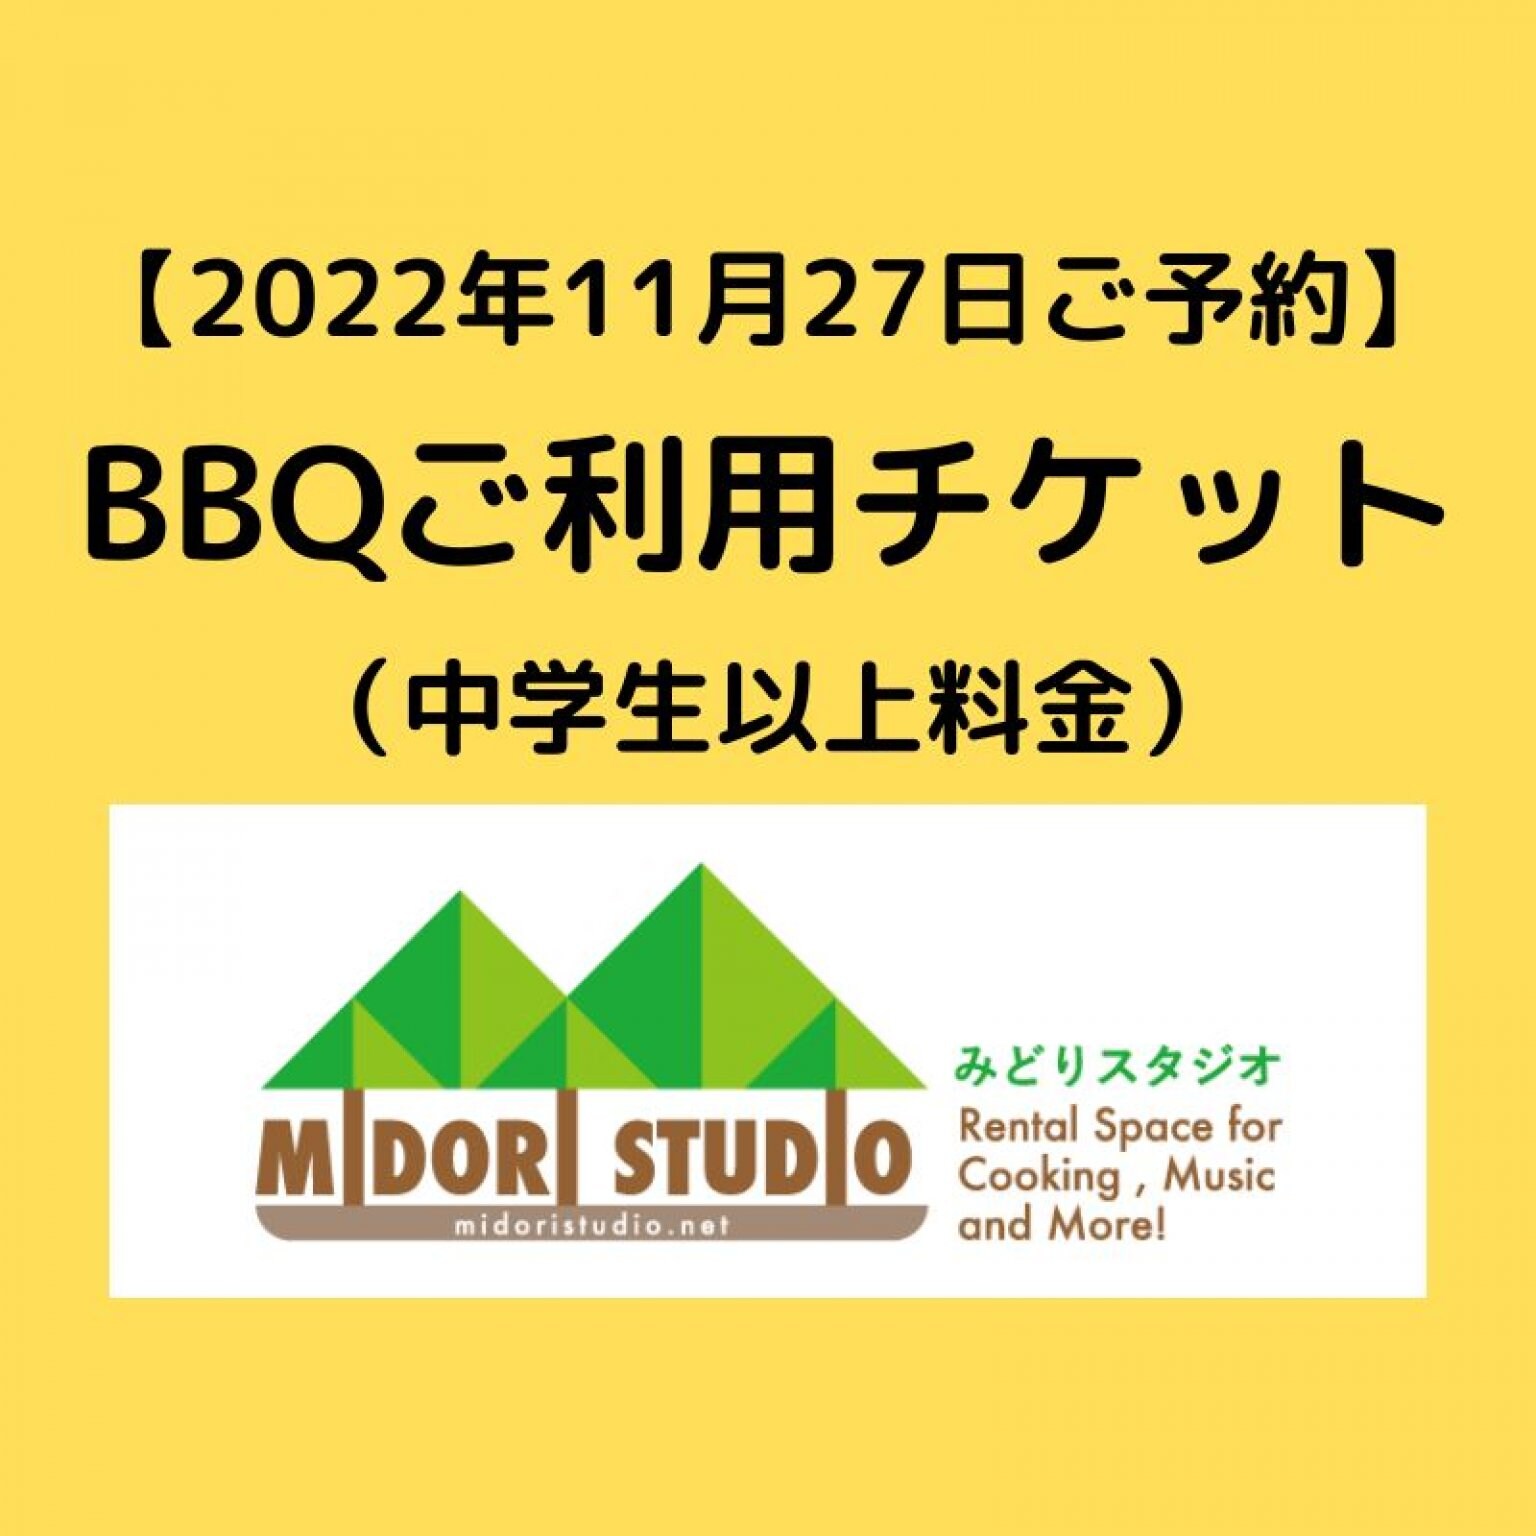 【2022年11月27日】BBQご利用4時間チケット（中学生以上料金）